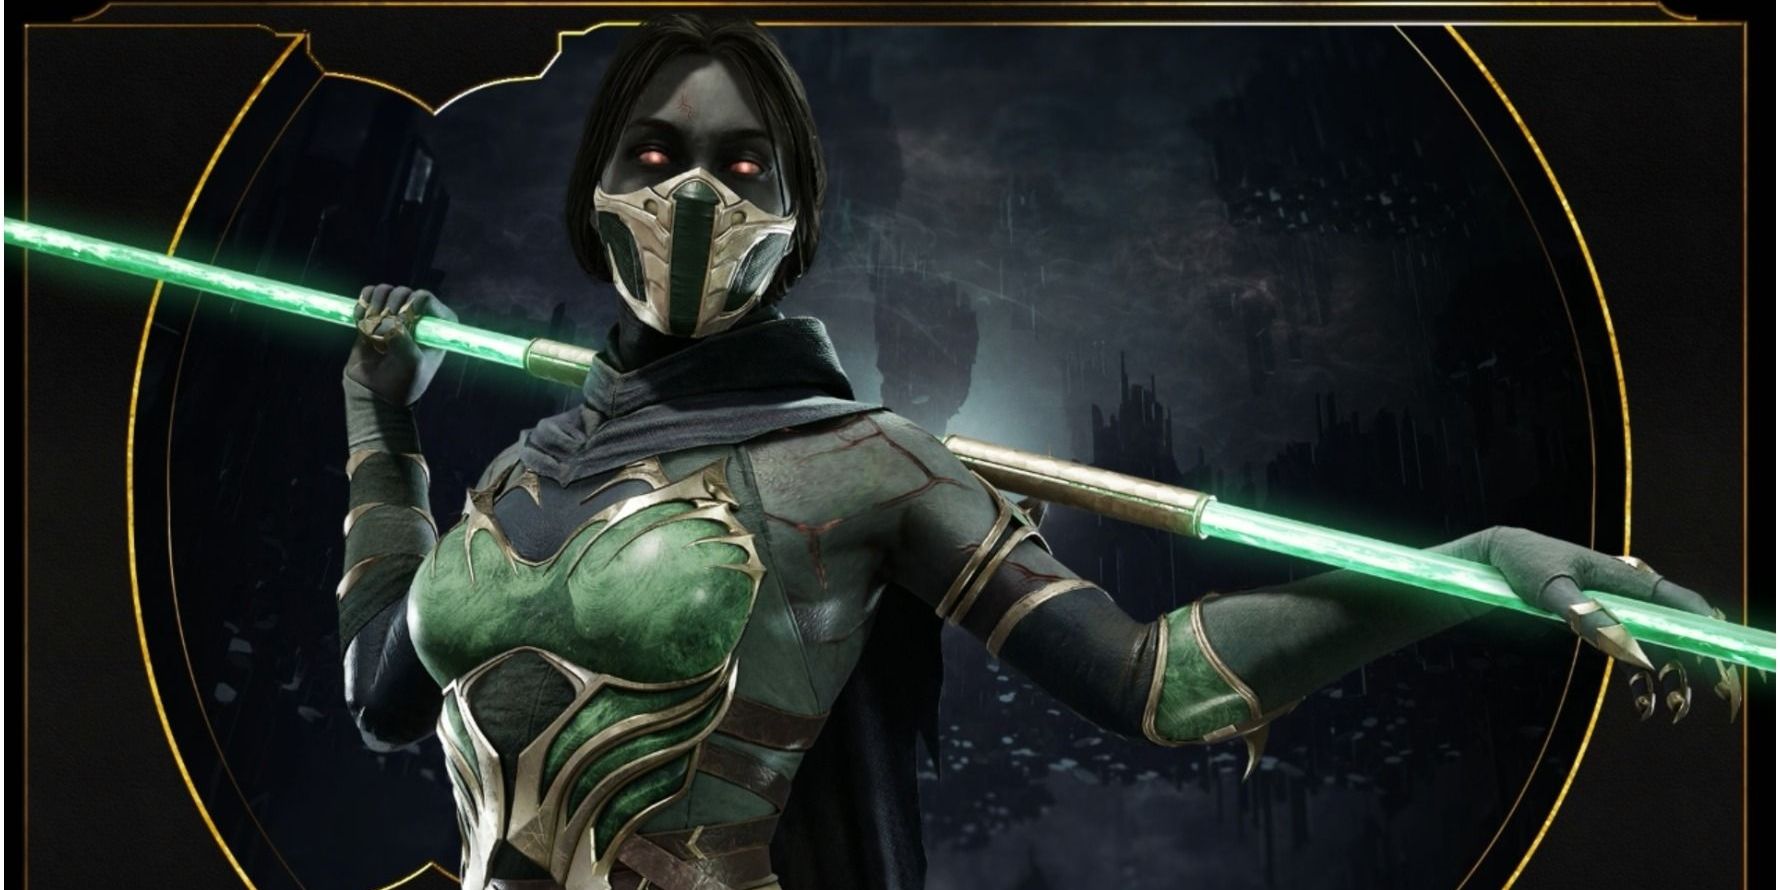 Jade from Mortal Kombat 11